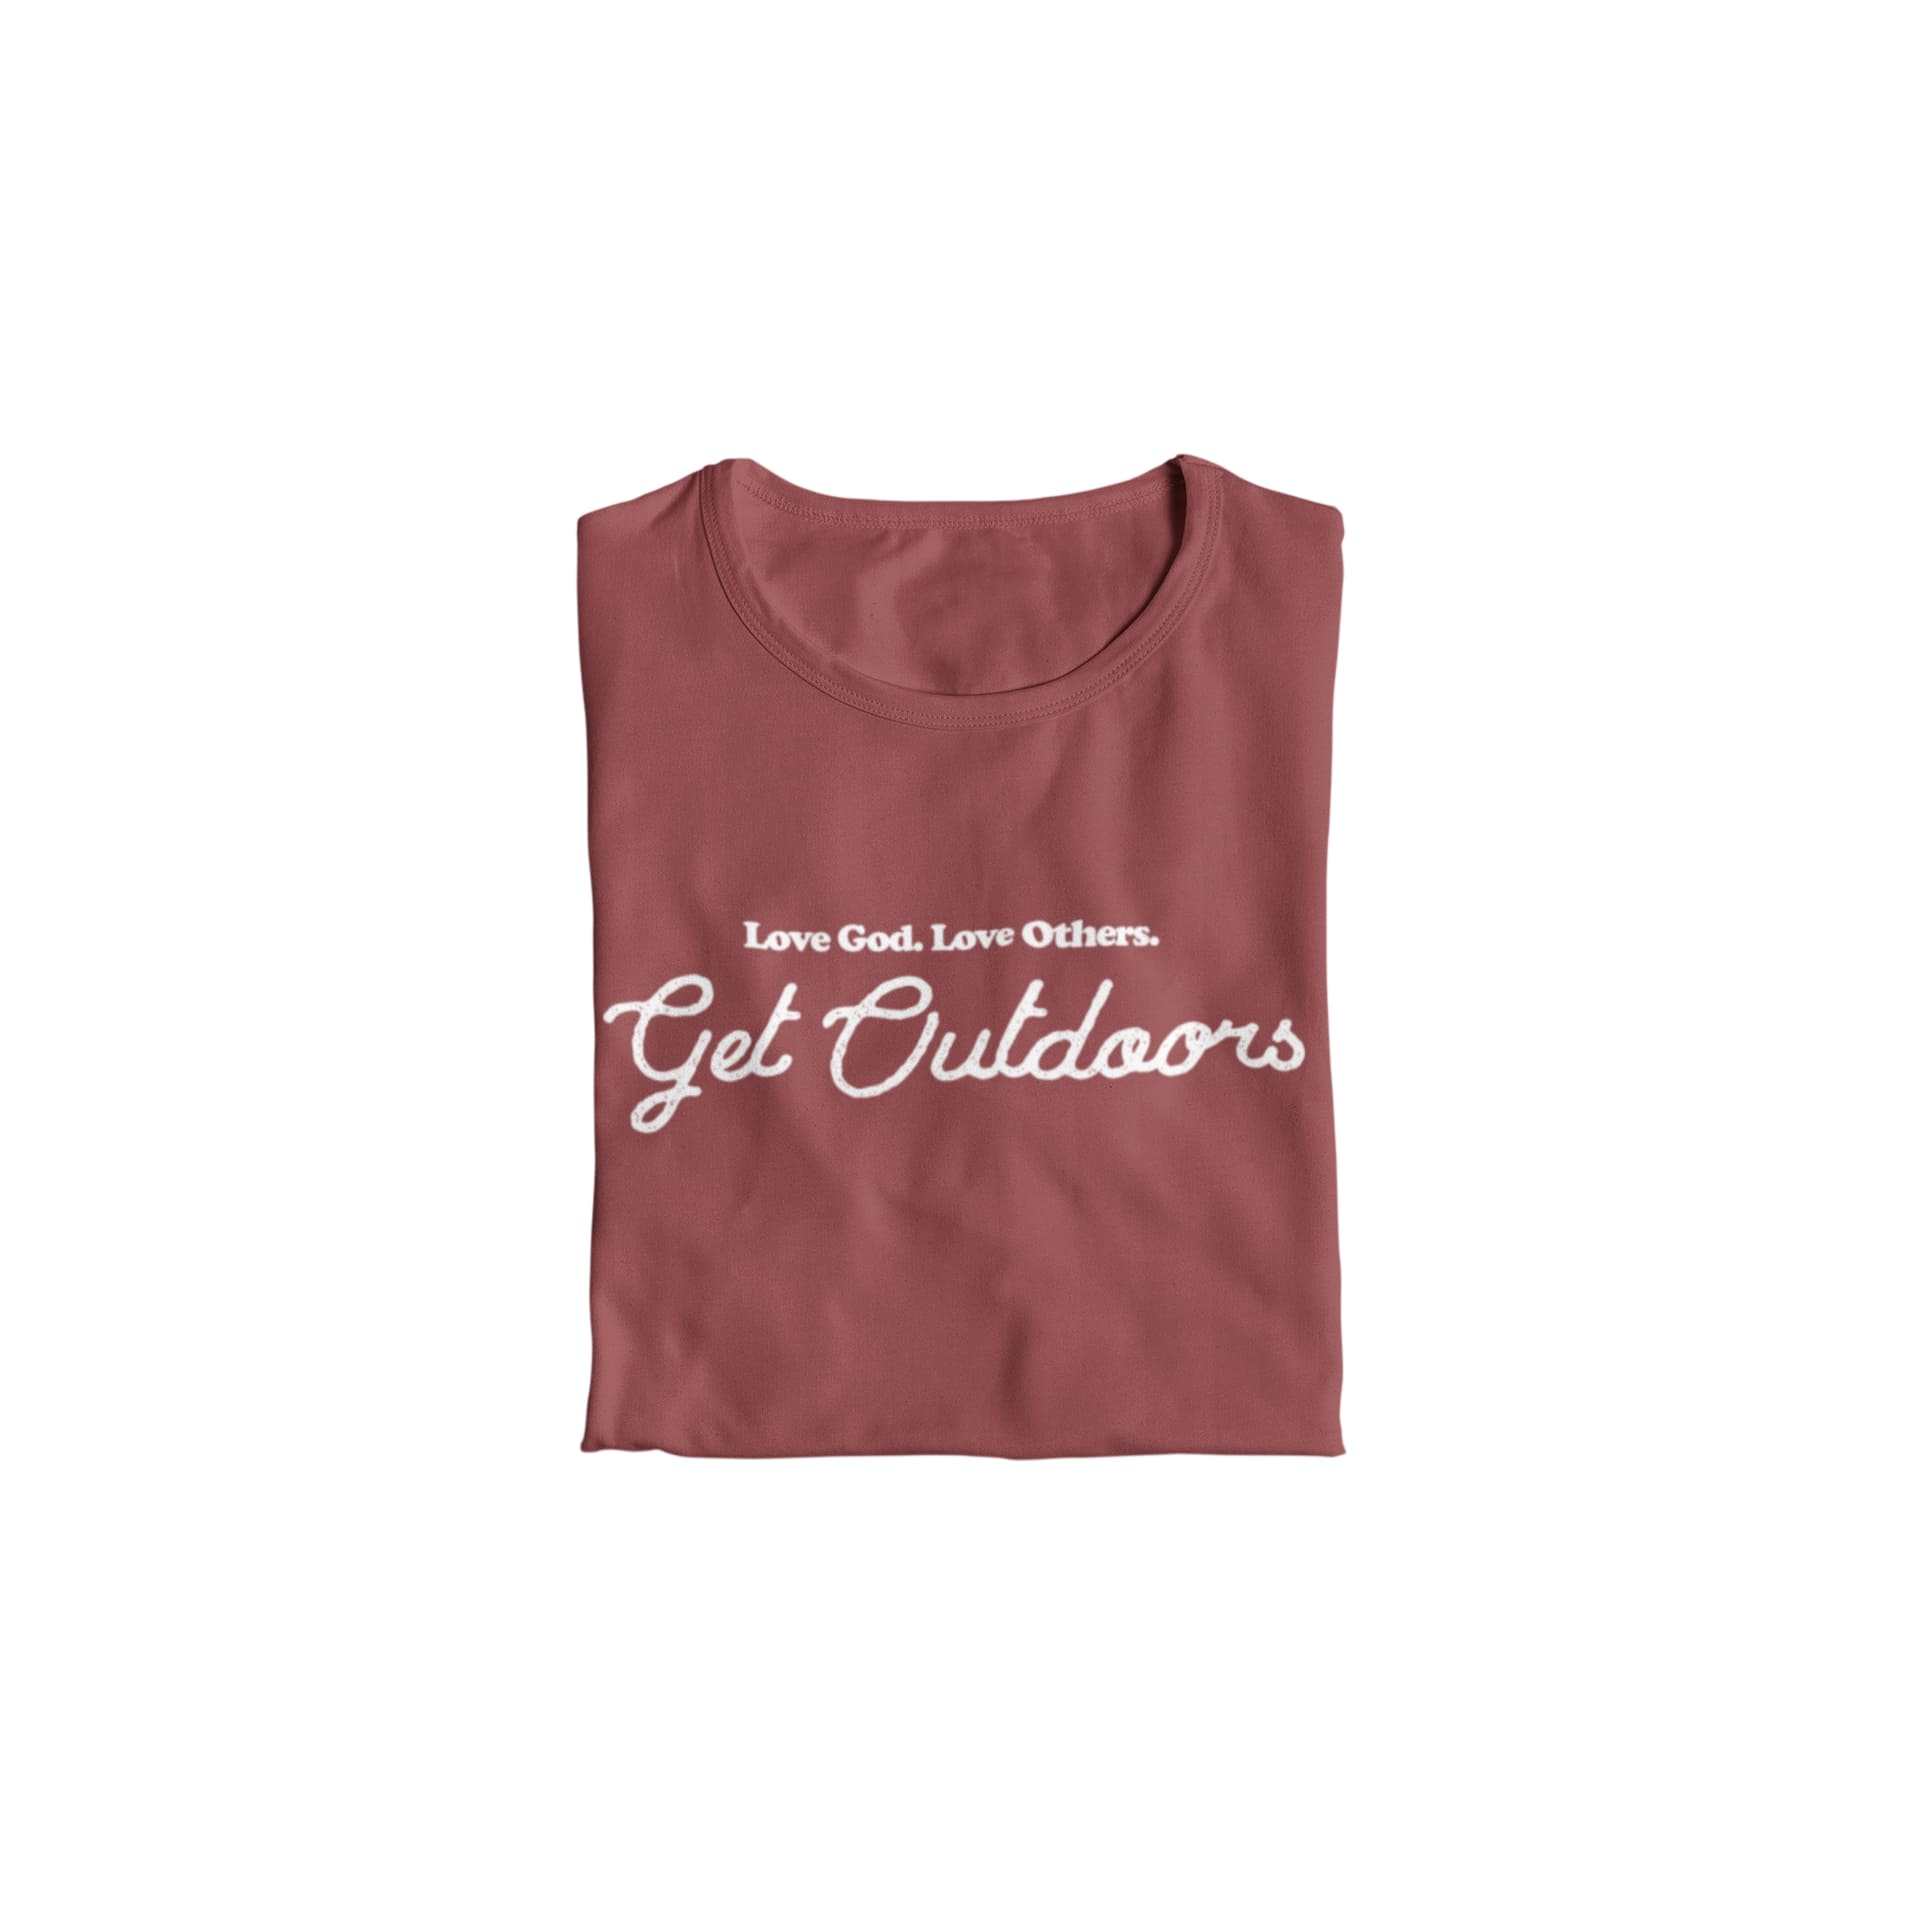 Get Outdoors BOLD T-shirt